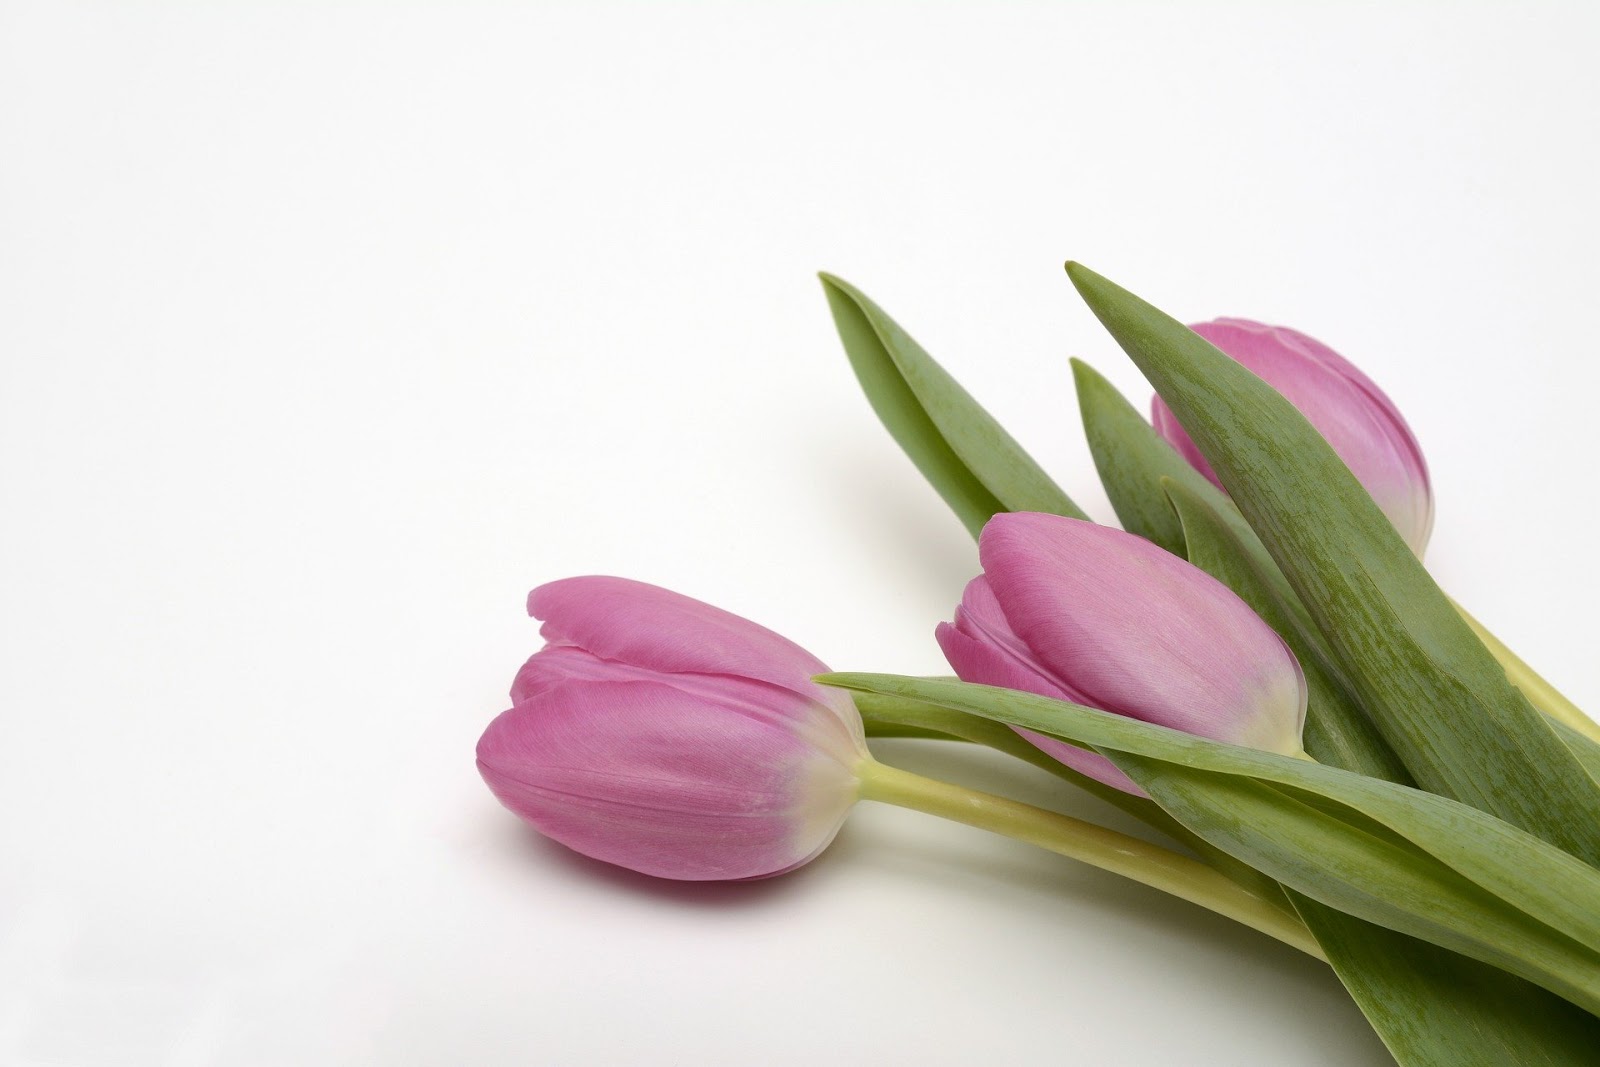  bunga tulip juga salah satu jenis bunga yang terkenal di indonesia 15+ Gambar Bunga Tulip Indah